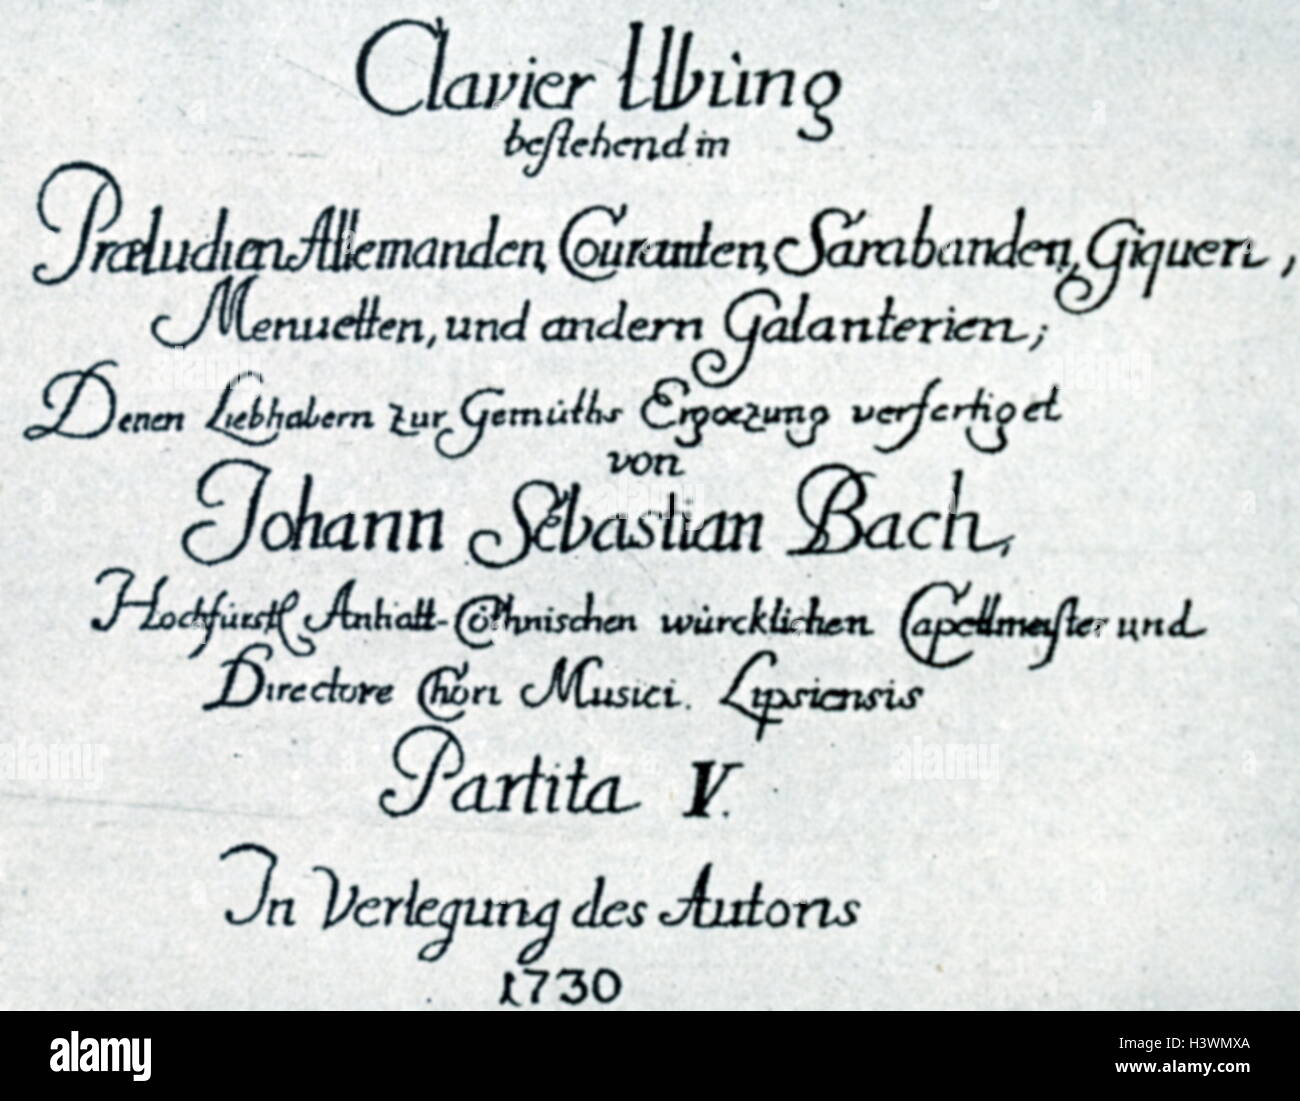 Abdeckung für Musik von Johann Sebastian Bach (1685-1750), deutscher Komponist und Musiker des Barock. Vom 18. Jahrhundert Stockfoto